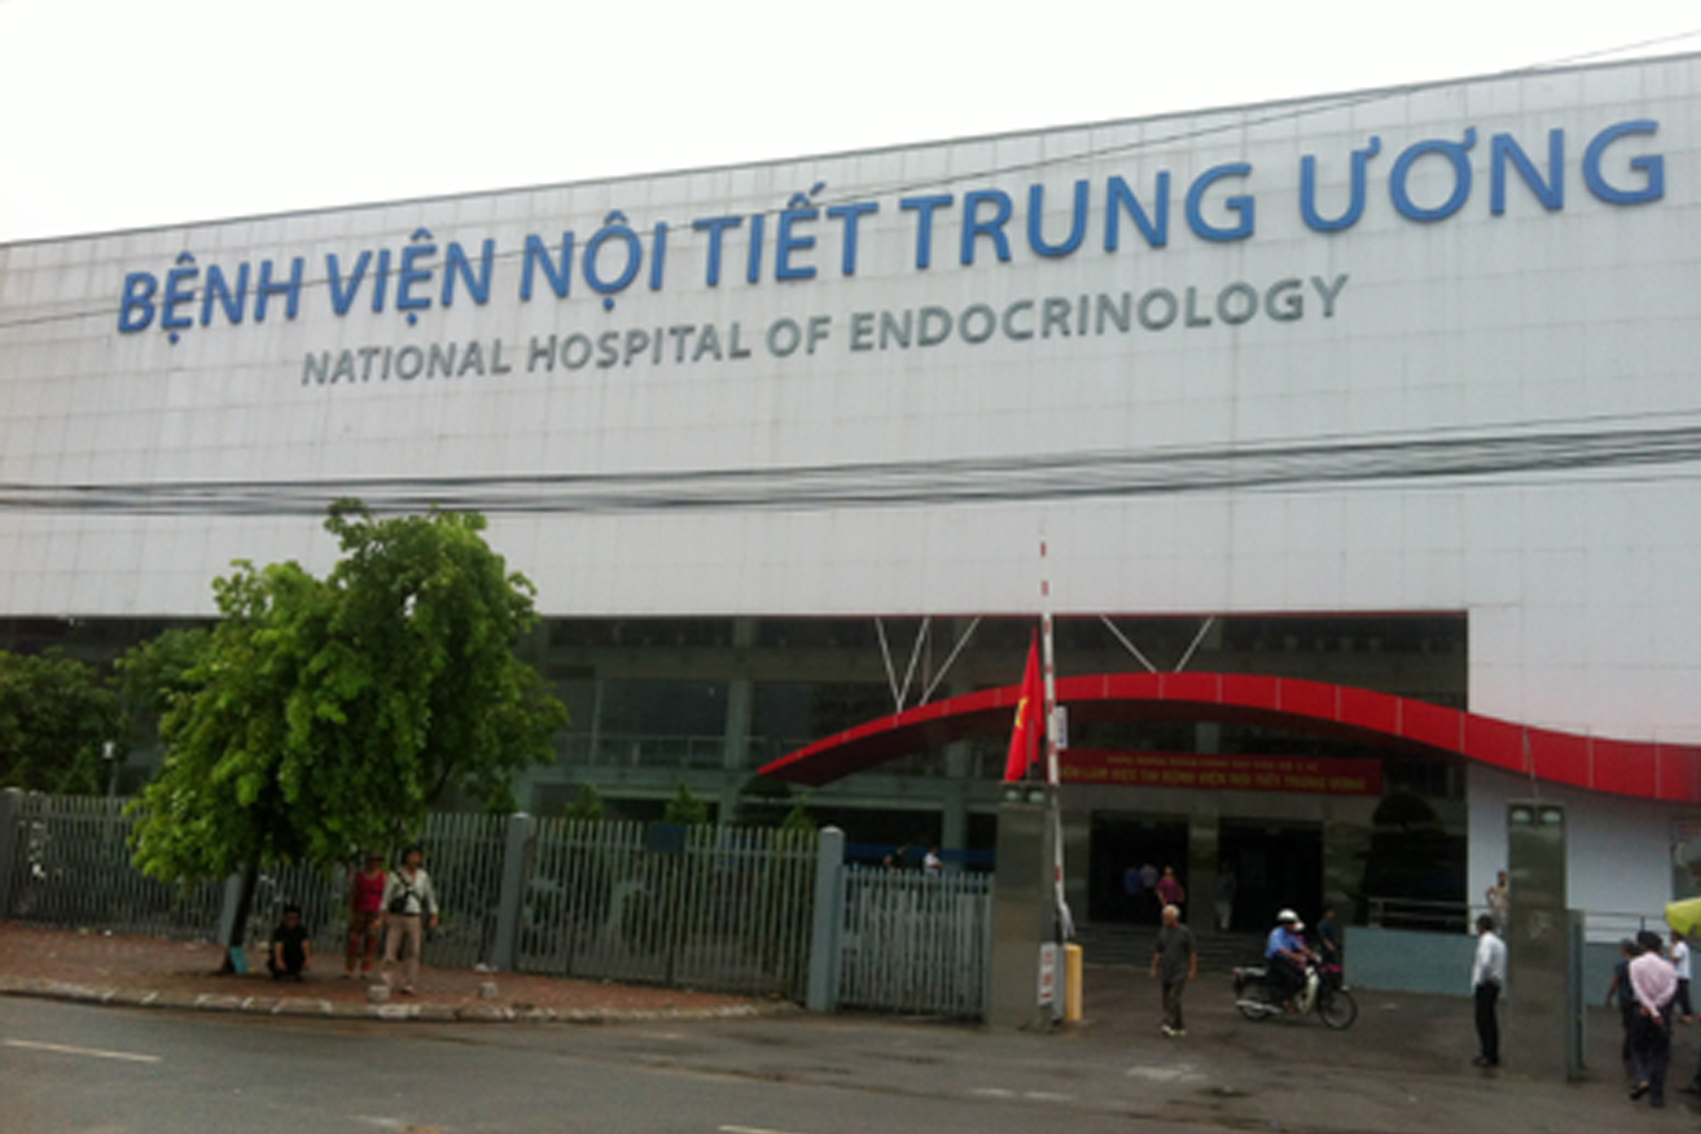 Dự án: Bệnh viện Nội tiết trung ương cơ sở II